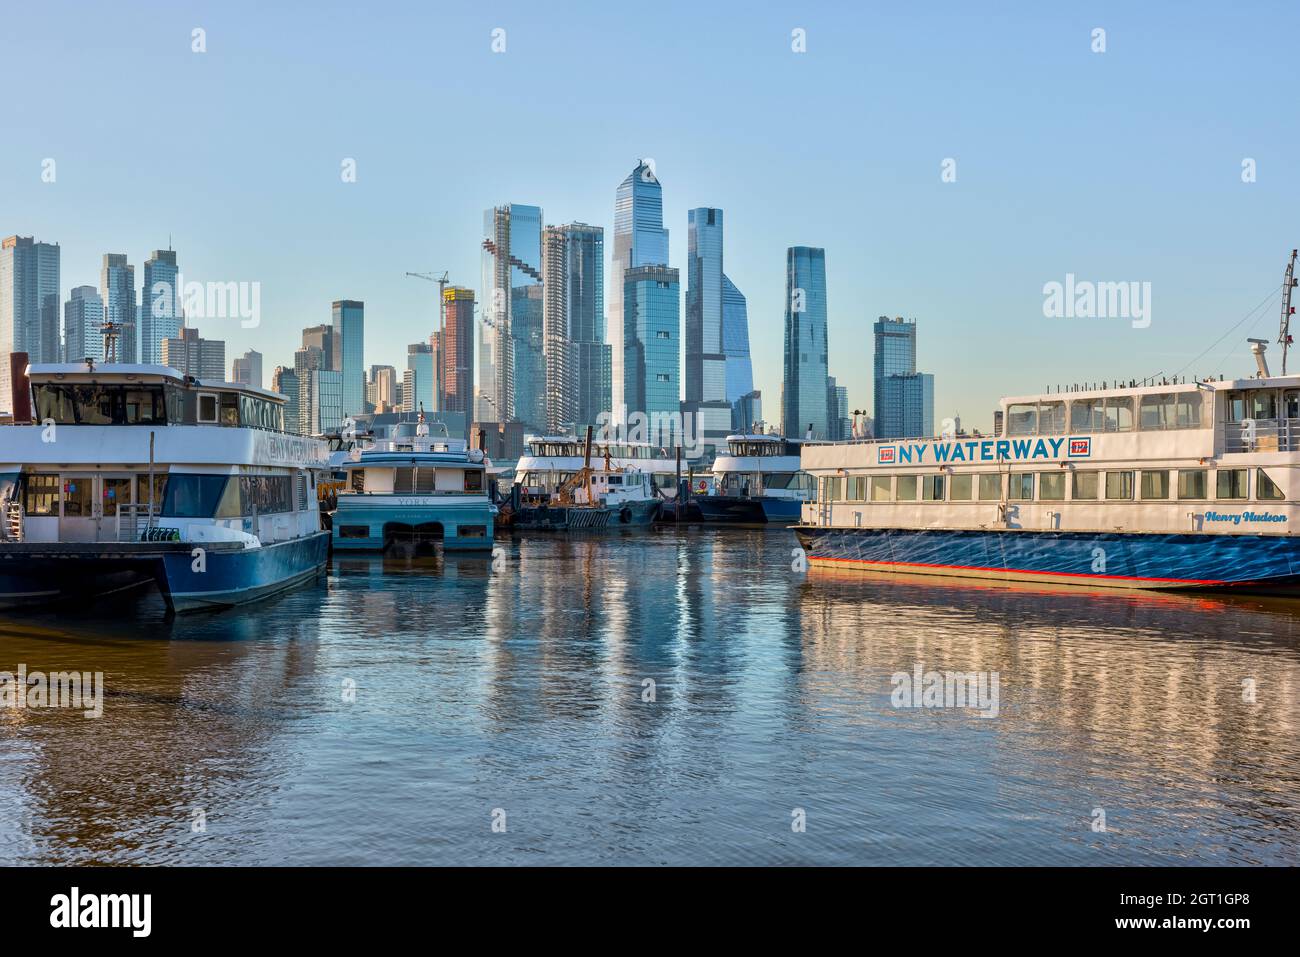 NY Waterway Fähren dockten in Weehawken, NJ, mit dem Hudson Yards Development in New York City im Hintergrund. Stockfoto